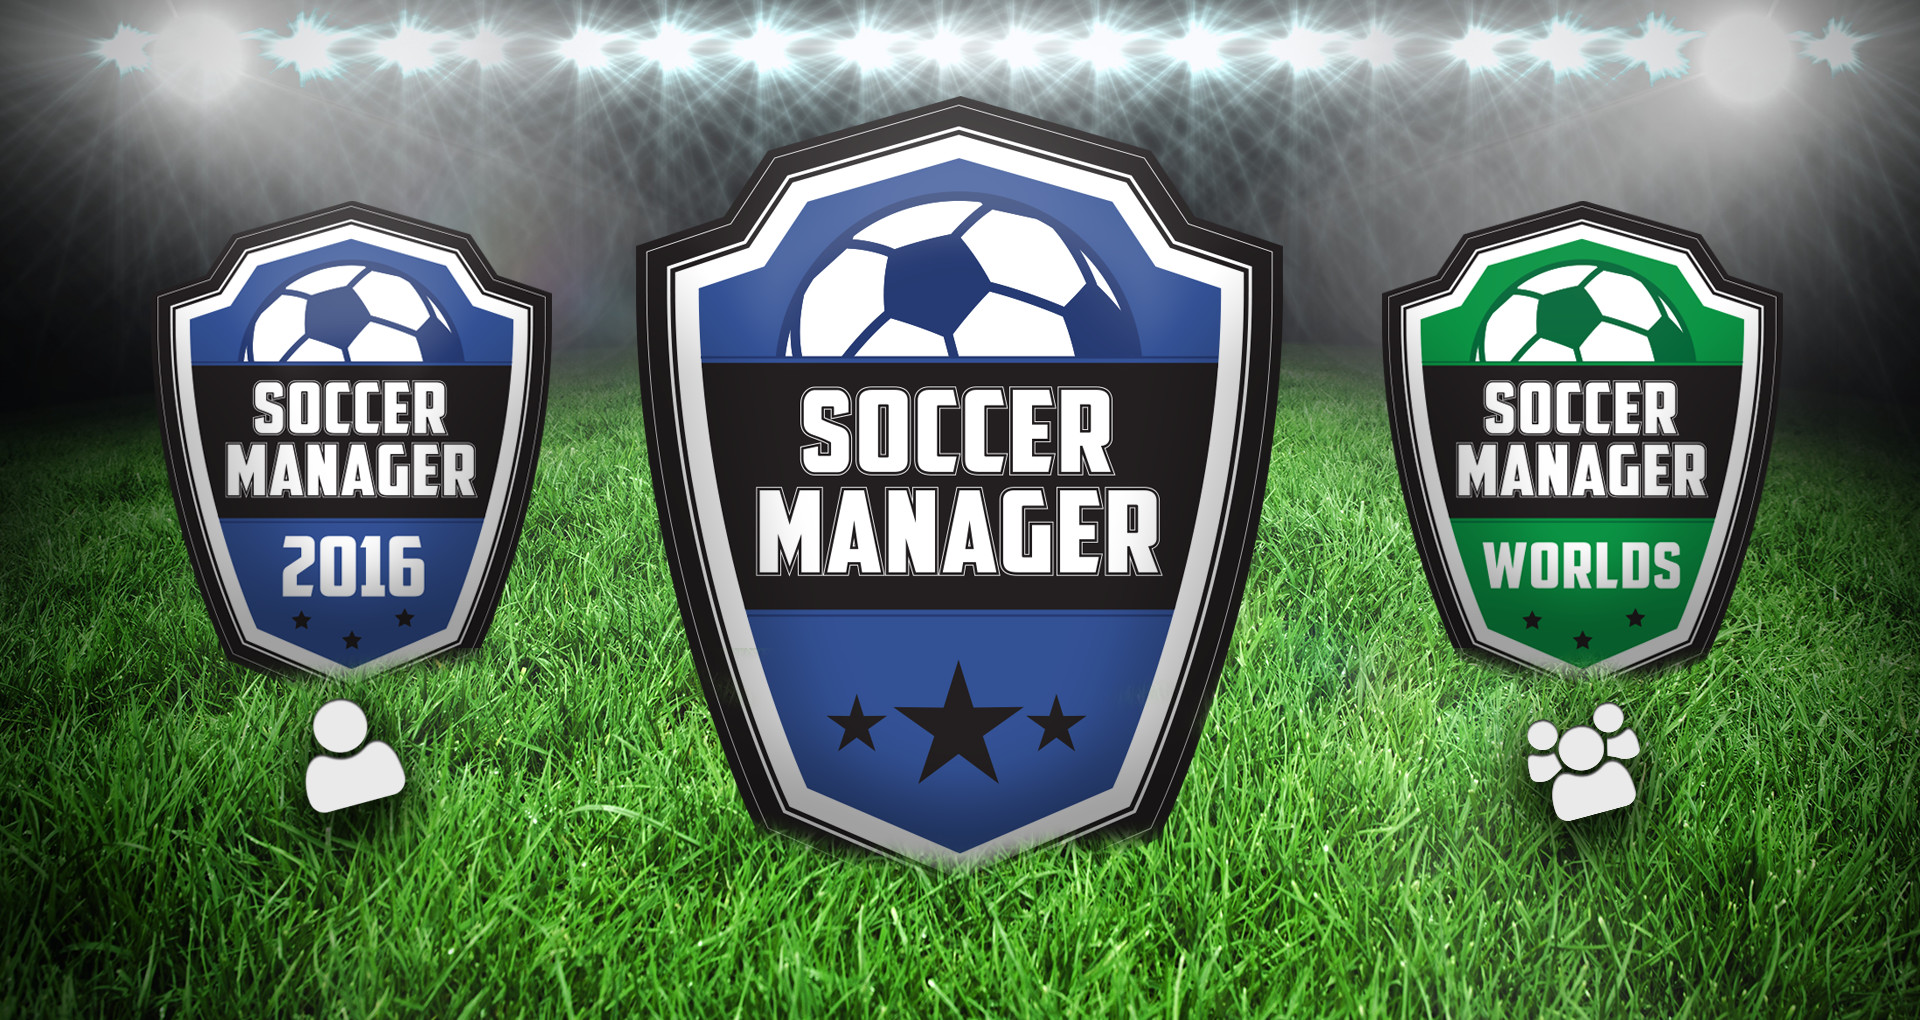 soccer manager 2016 apk download